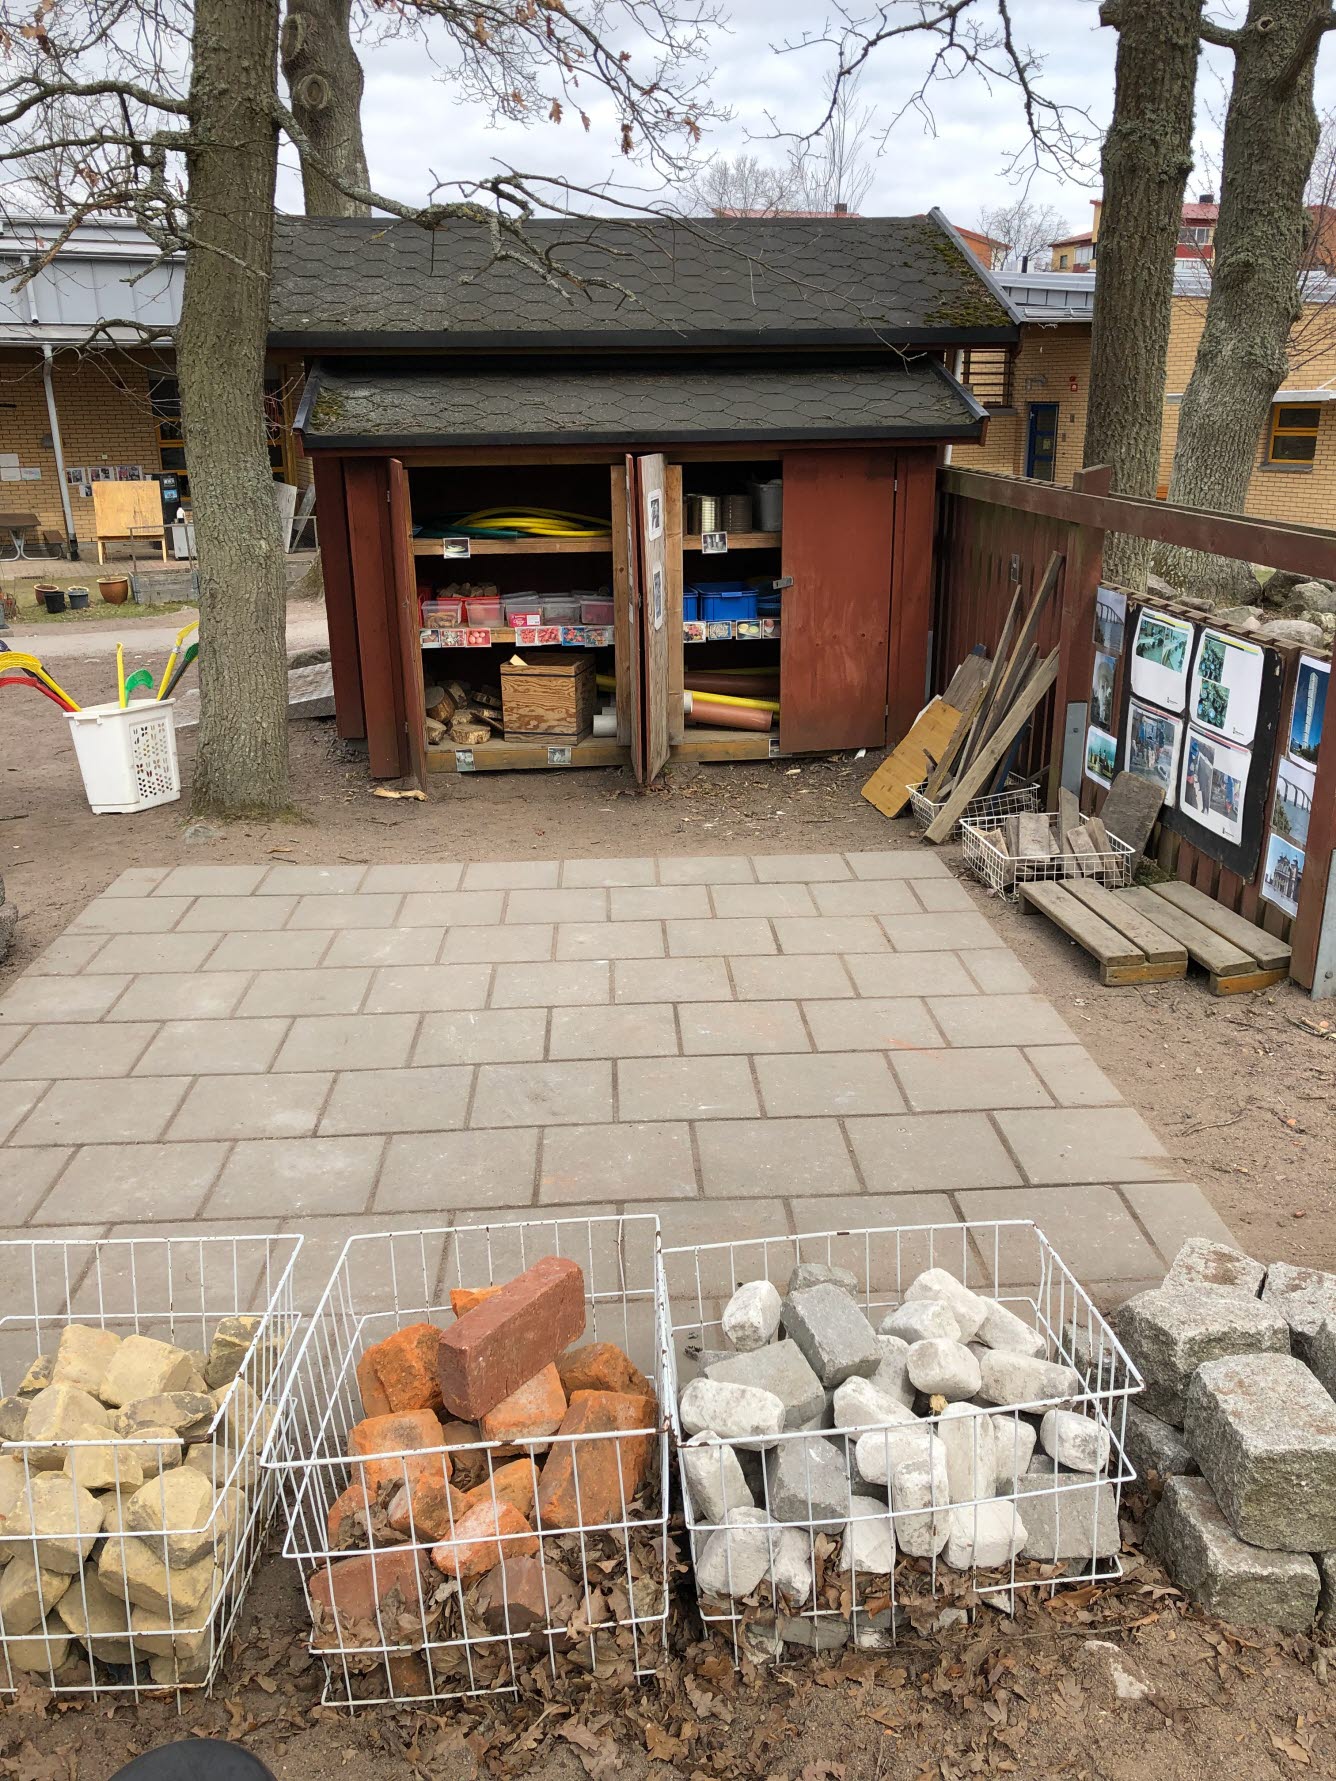 Plattbelagd yta där det finns korgar med olika byggstenar som barnen kan skapa med.